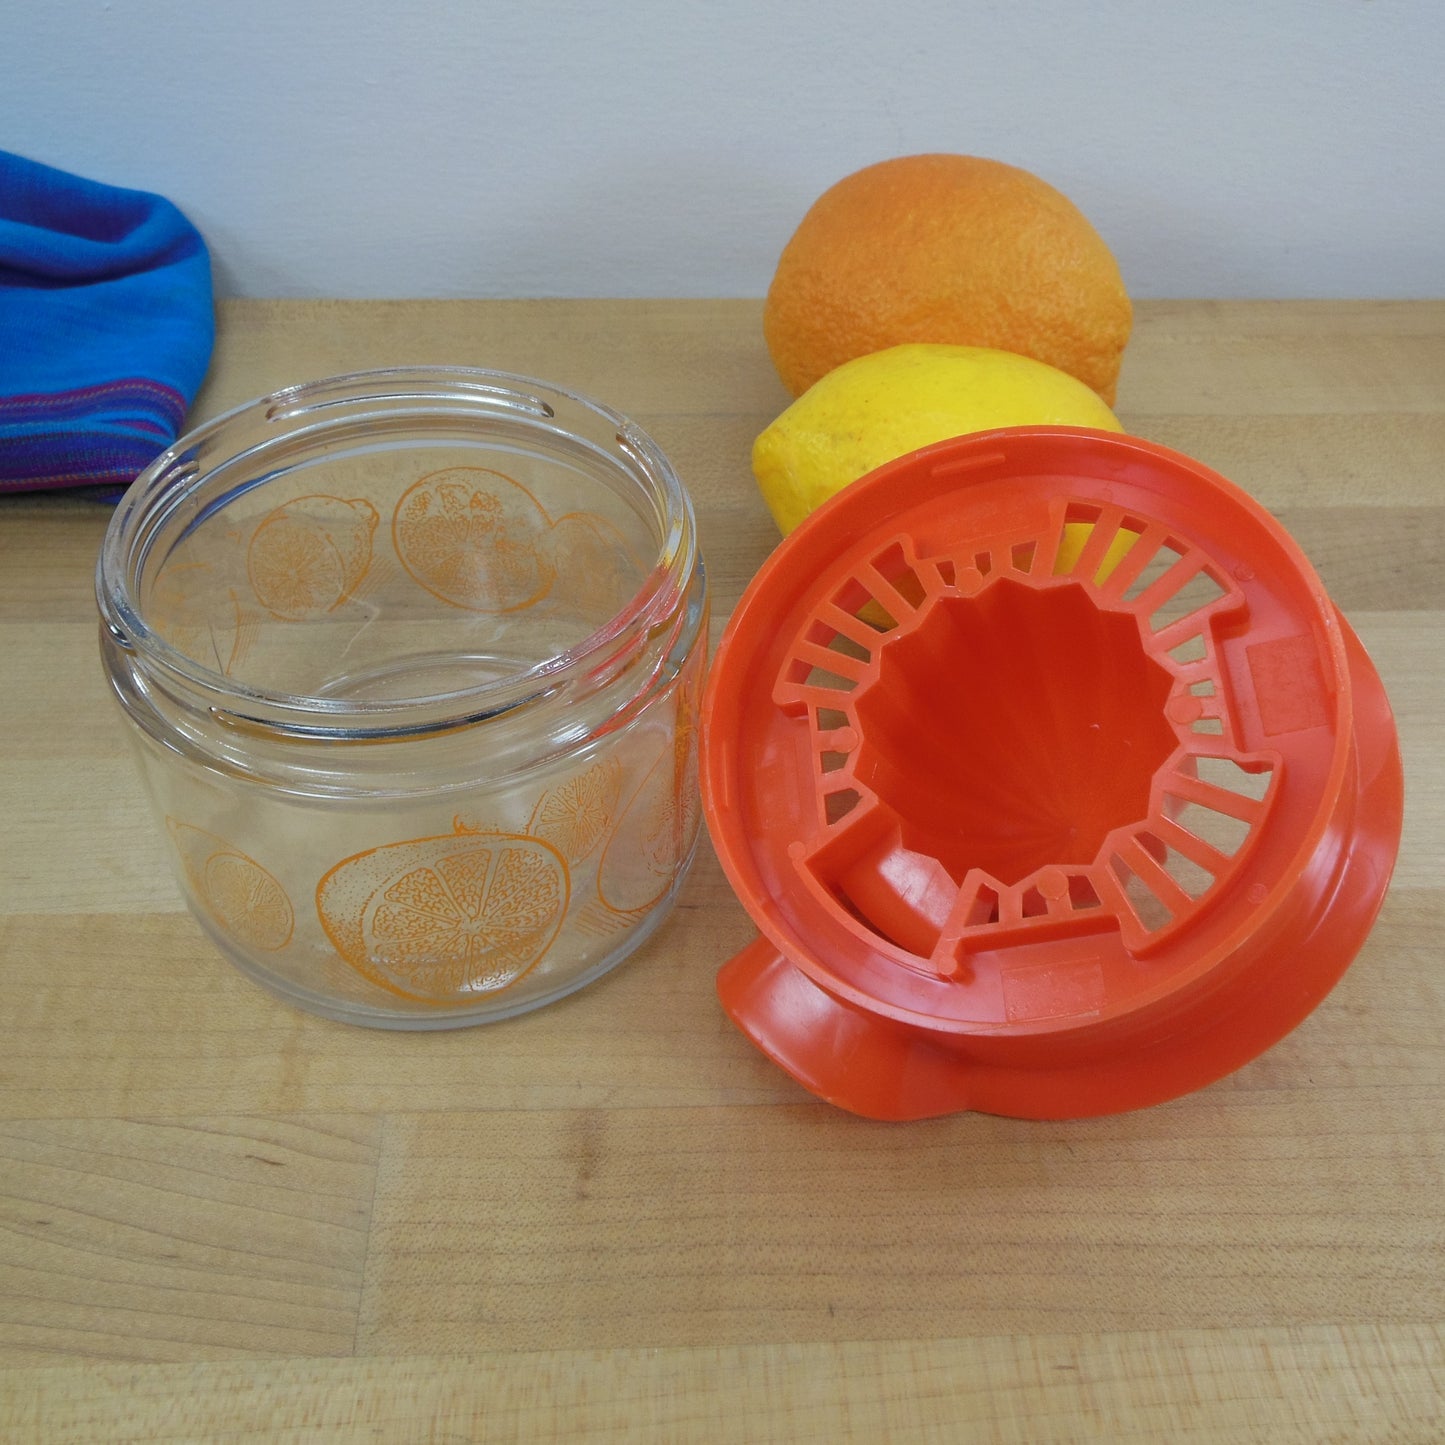 Gemco USA Citrus Orange Juicer Glass Jar Hand Reamer Vintage